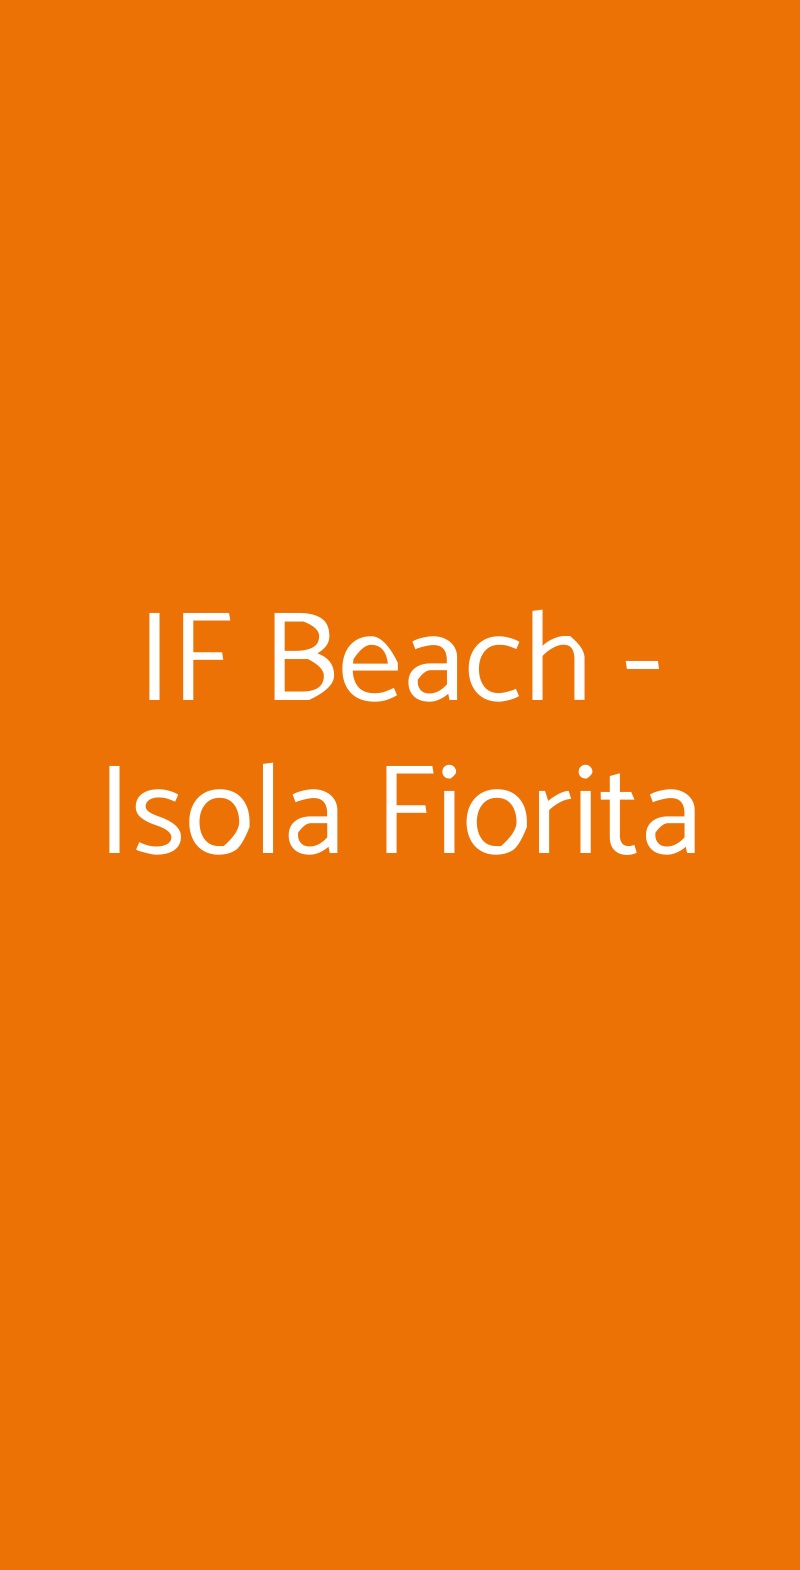 IF Beach - Isola Fiorita Lido di Ostia menù 1 pagina